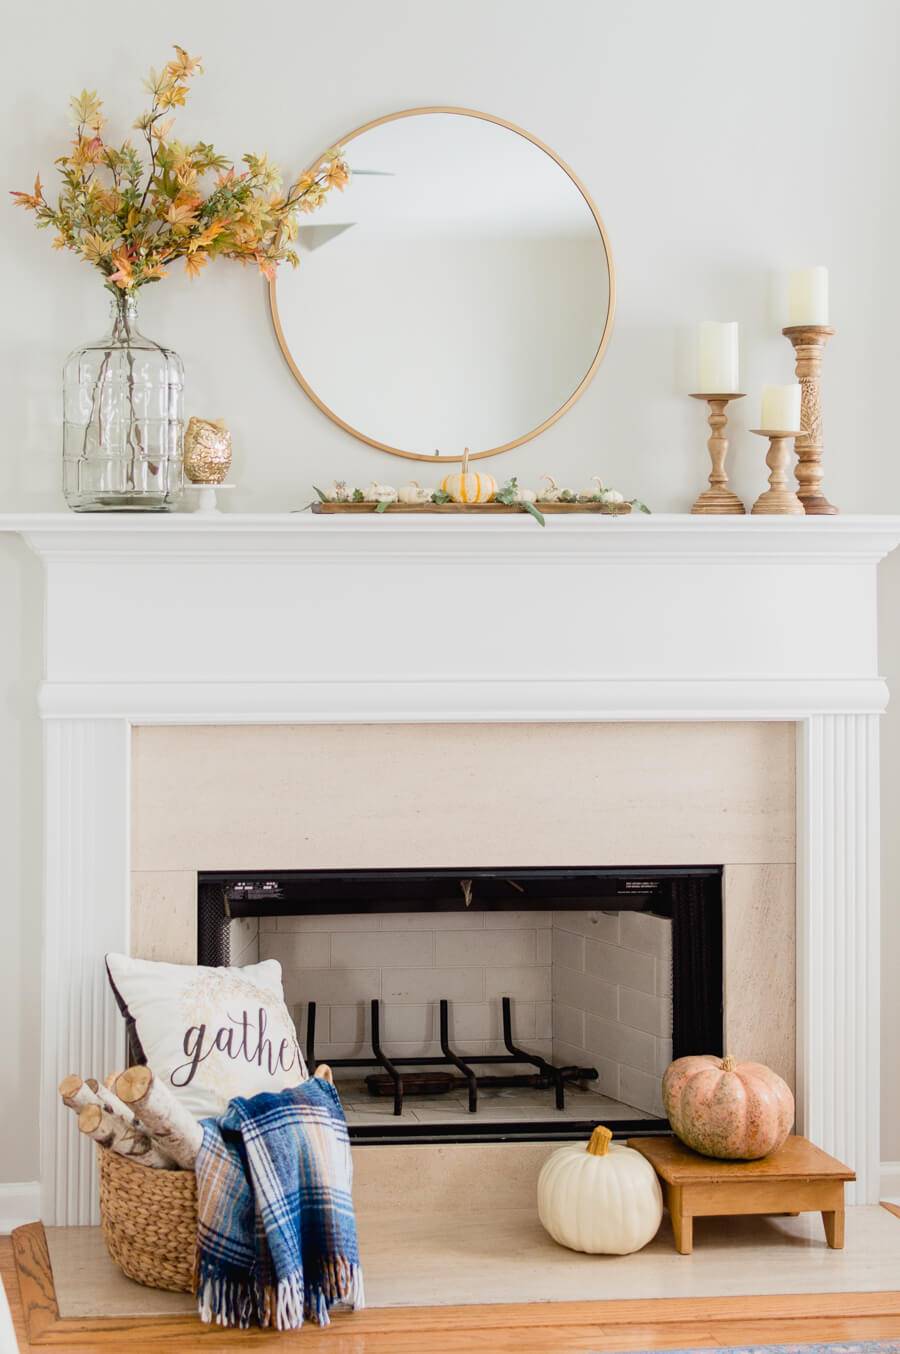 Chimenea blanca decorada con calabazas, un jarrón con hojas de otoño, un espejo redondo y portavelas de madera